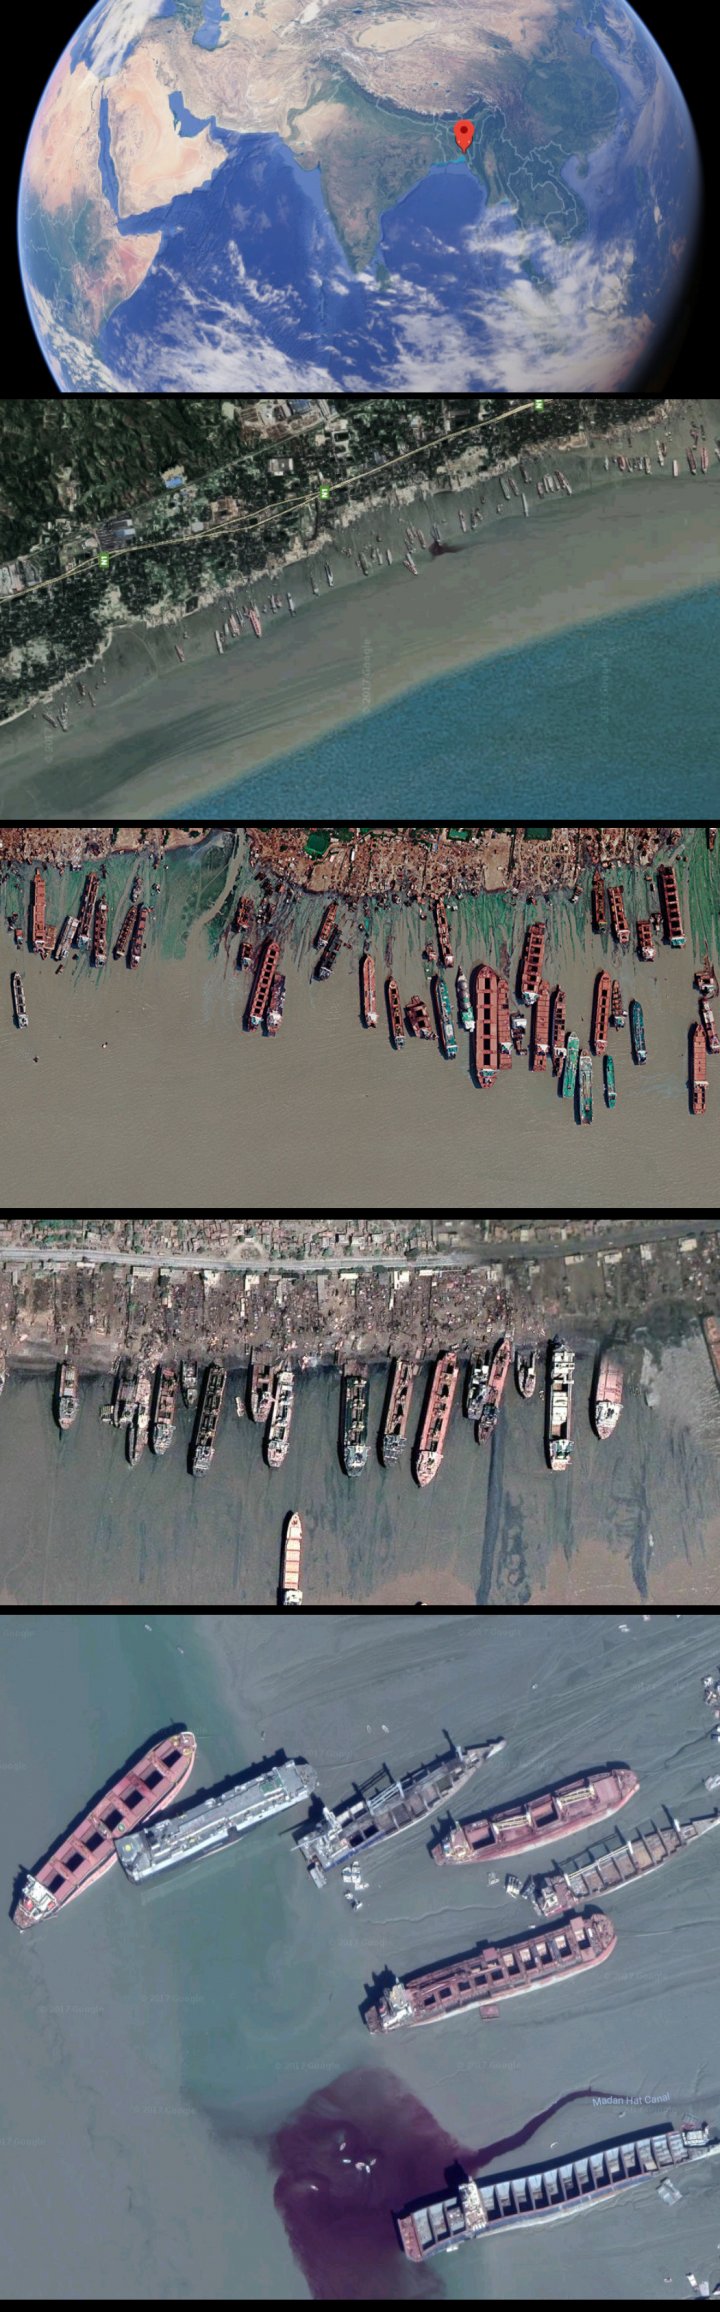 Читтагонг - місто, де закінчують свій шлях кораблі (фото)